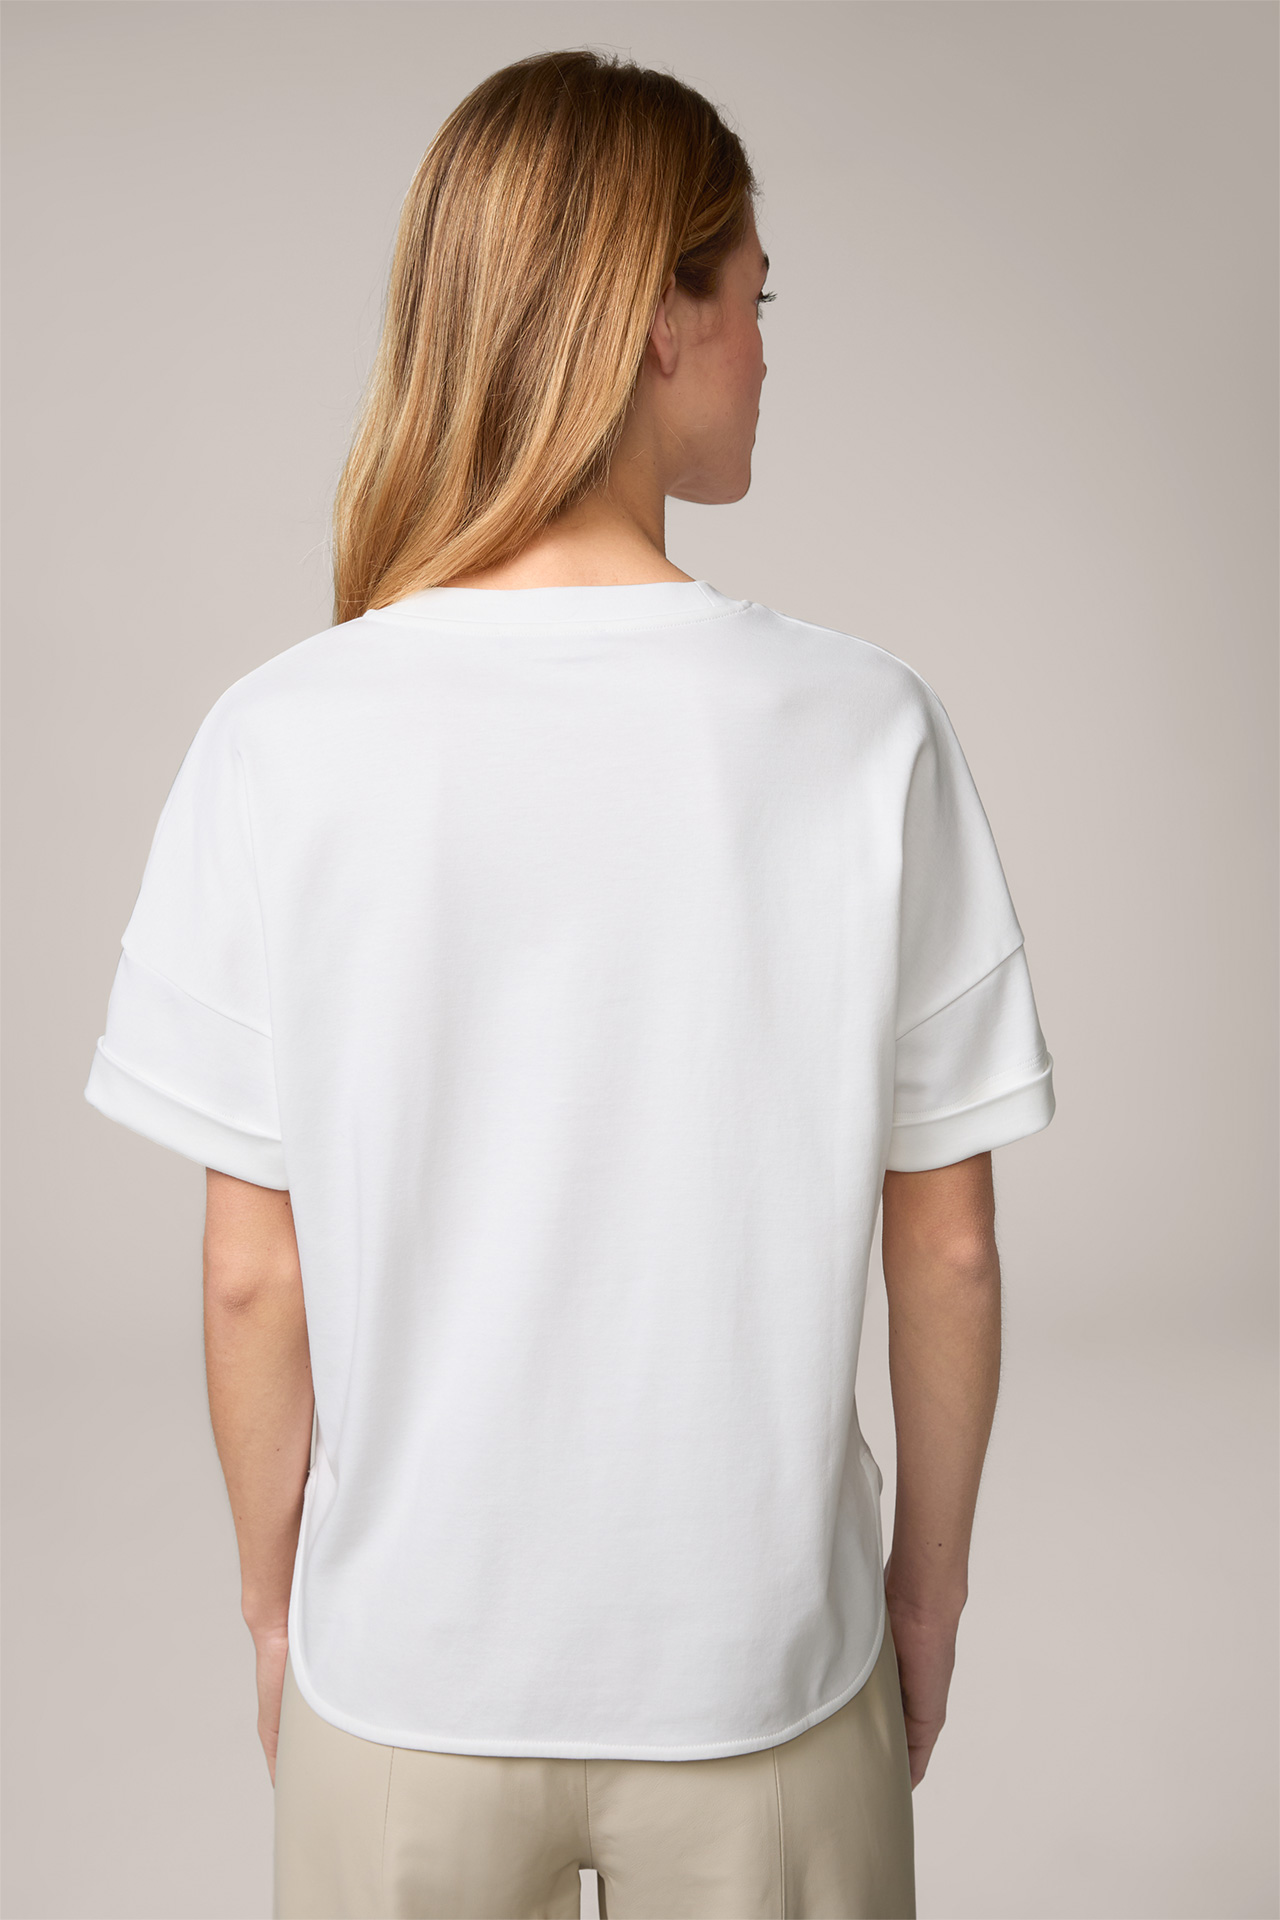  T-shirt en coton interlock à manches courtes, en blanc